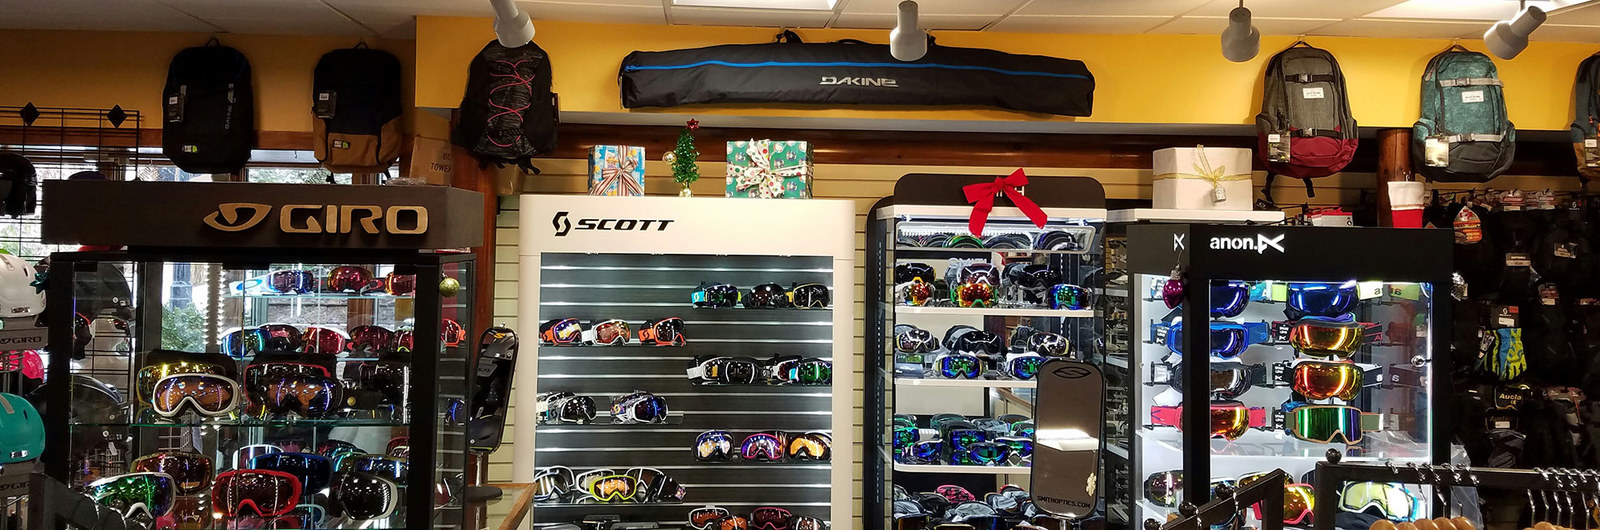 Ski goggle display at Holiday Valley mountain shop